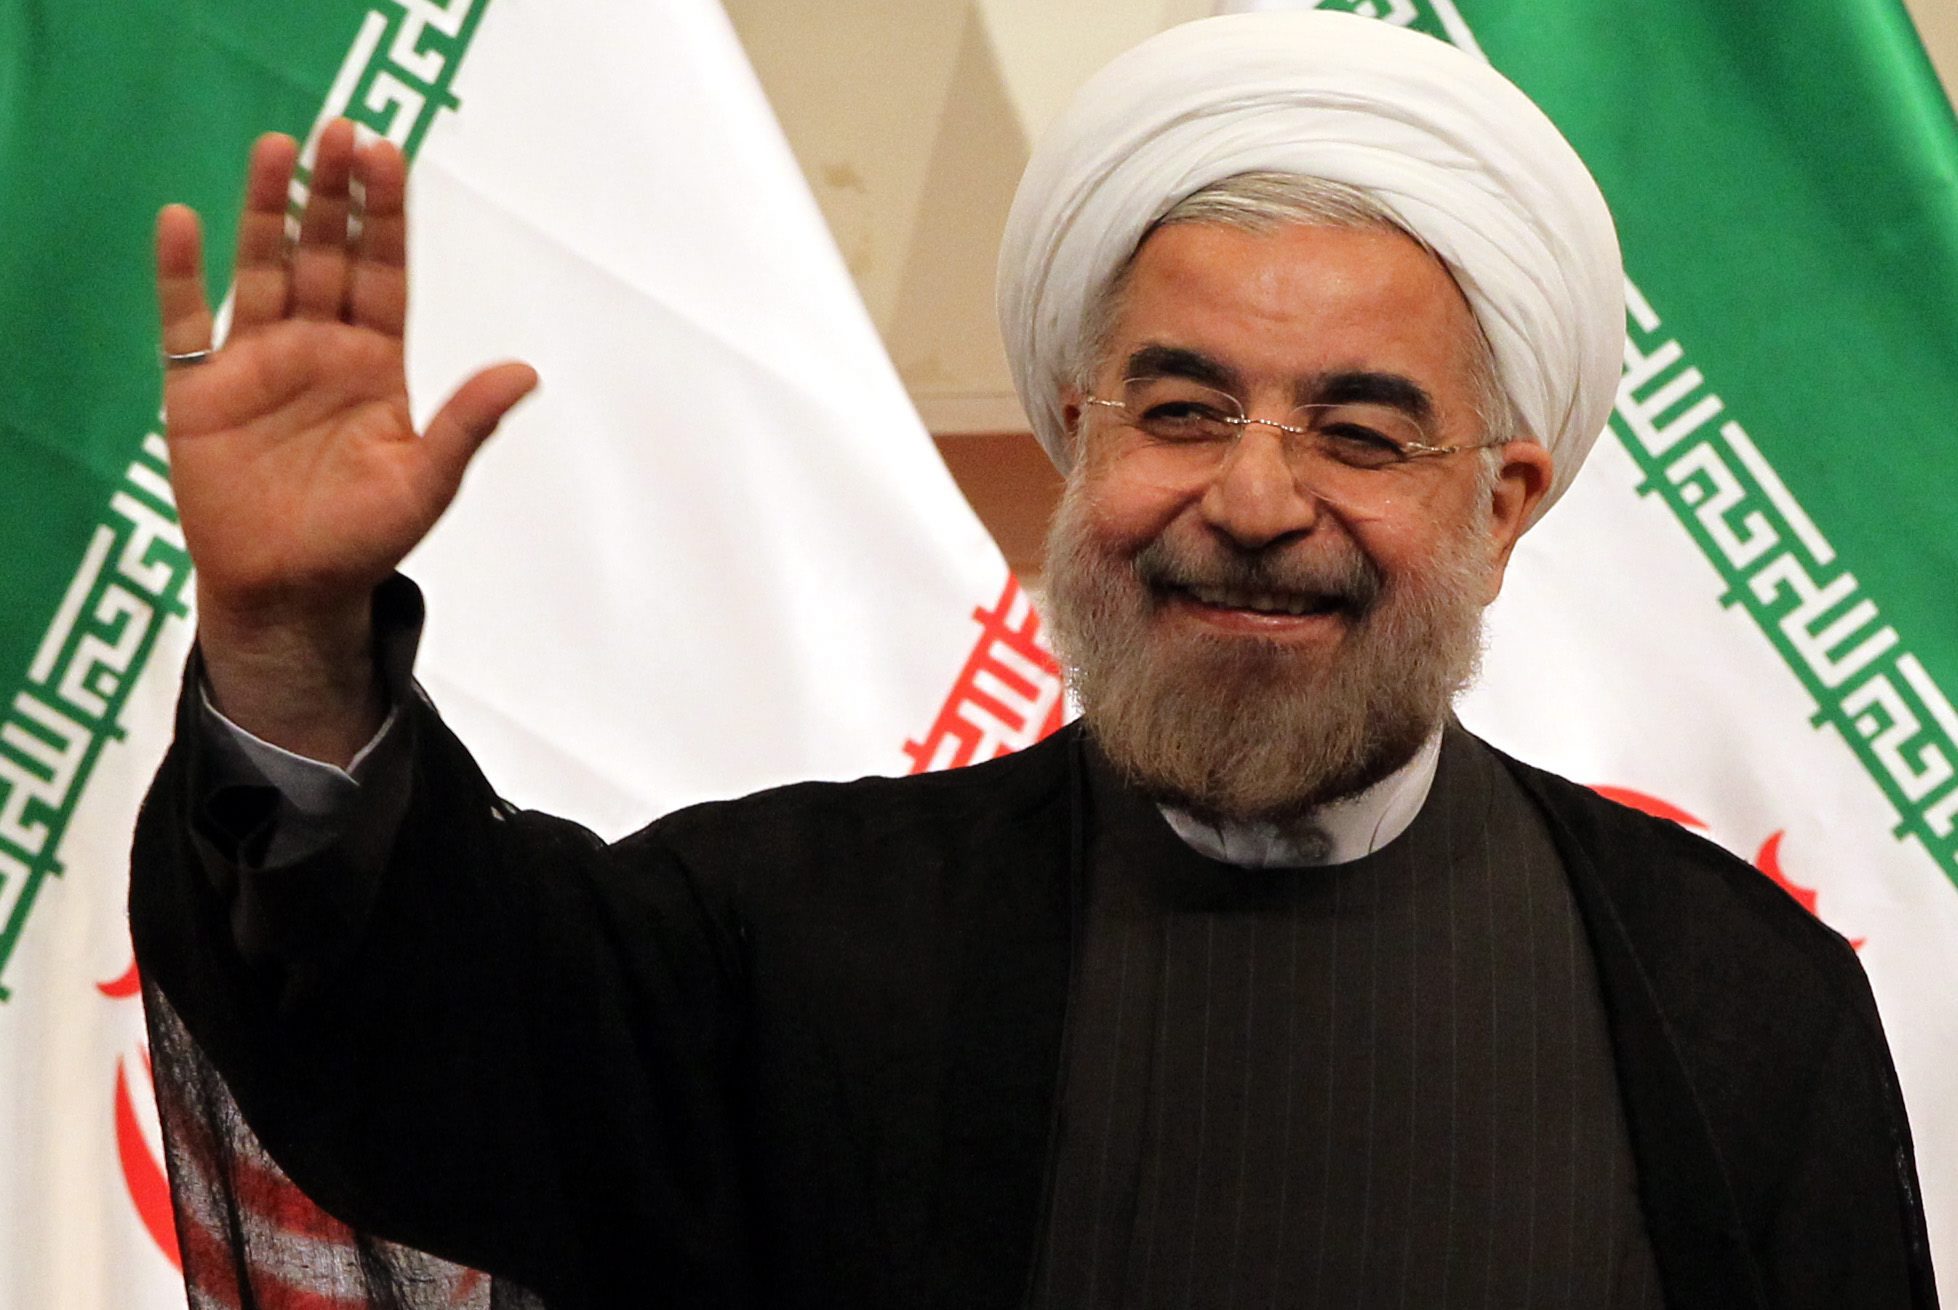 Ιράν : Την ικανοποίησή του για την αποχώρηση του «τρομοκράτη» Τραμπ εξέφρασε ο πρόεδρος Ροχανί